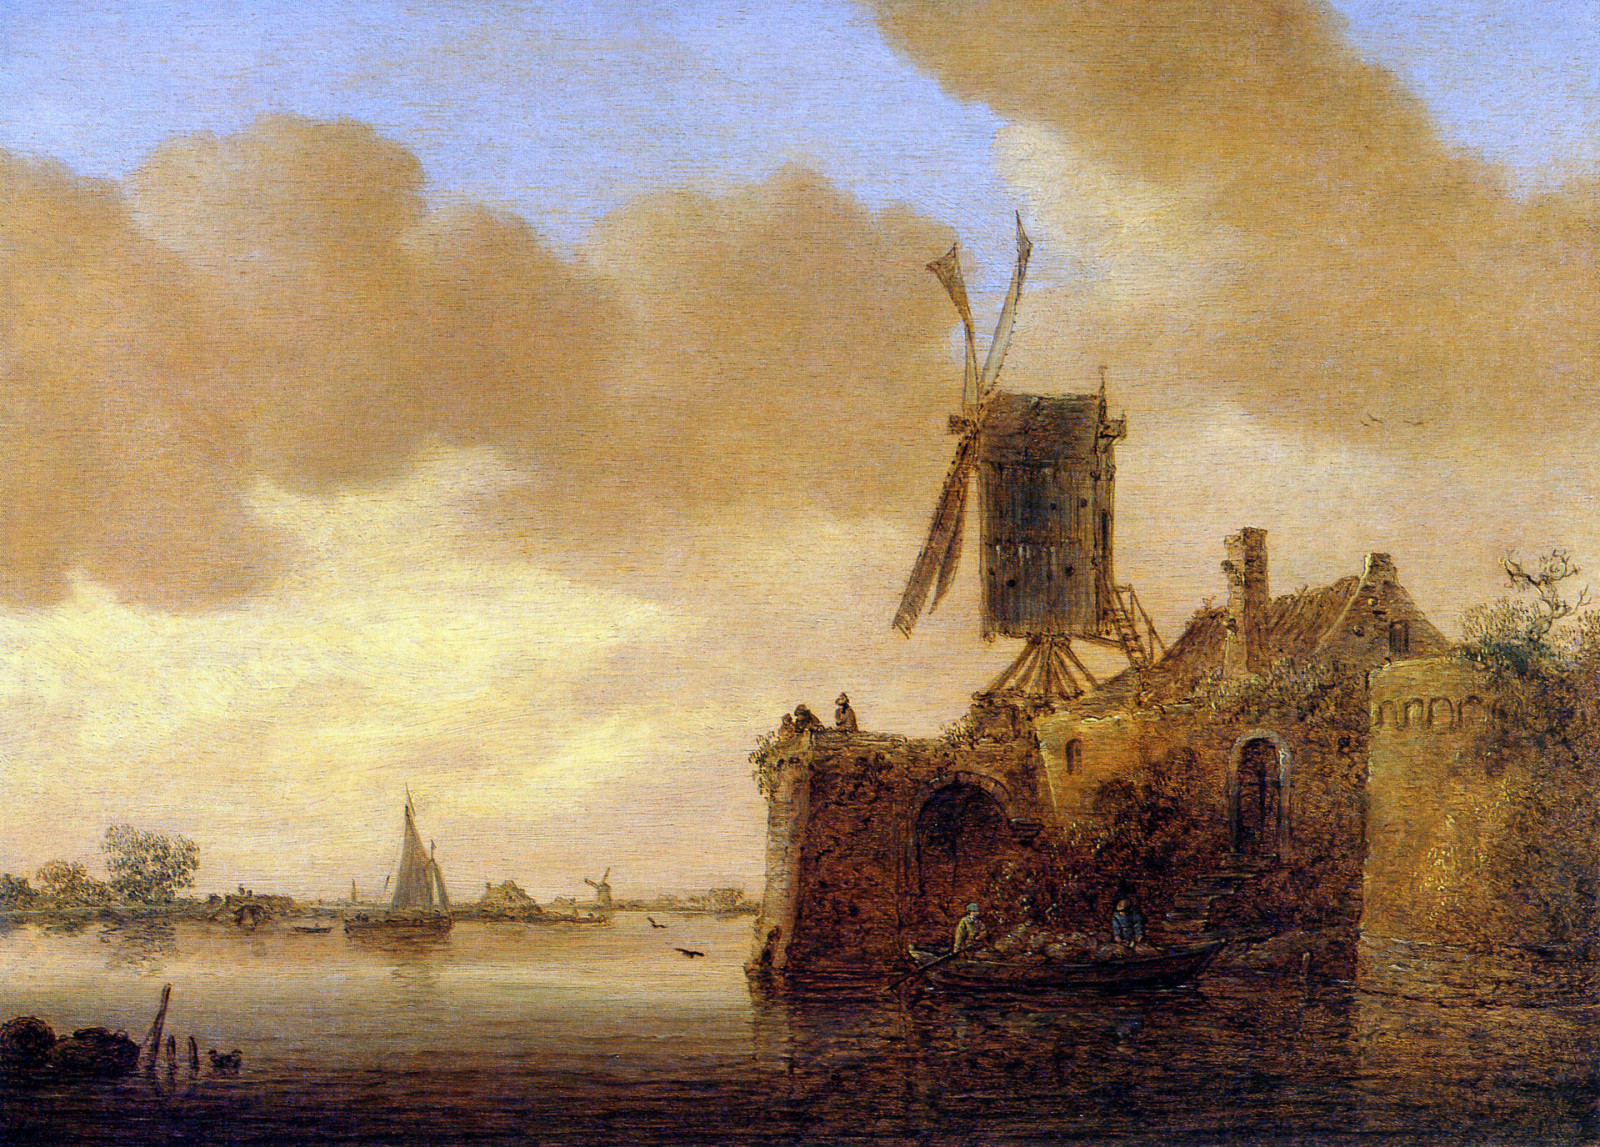 家, ボート, 帆, 風車, 川の風景, ヤン・ファン・ゴイエン